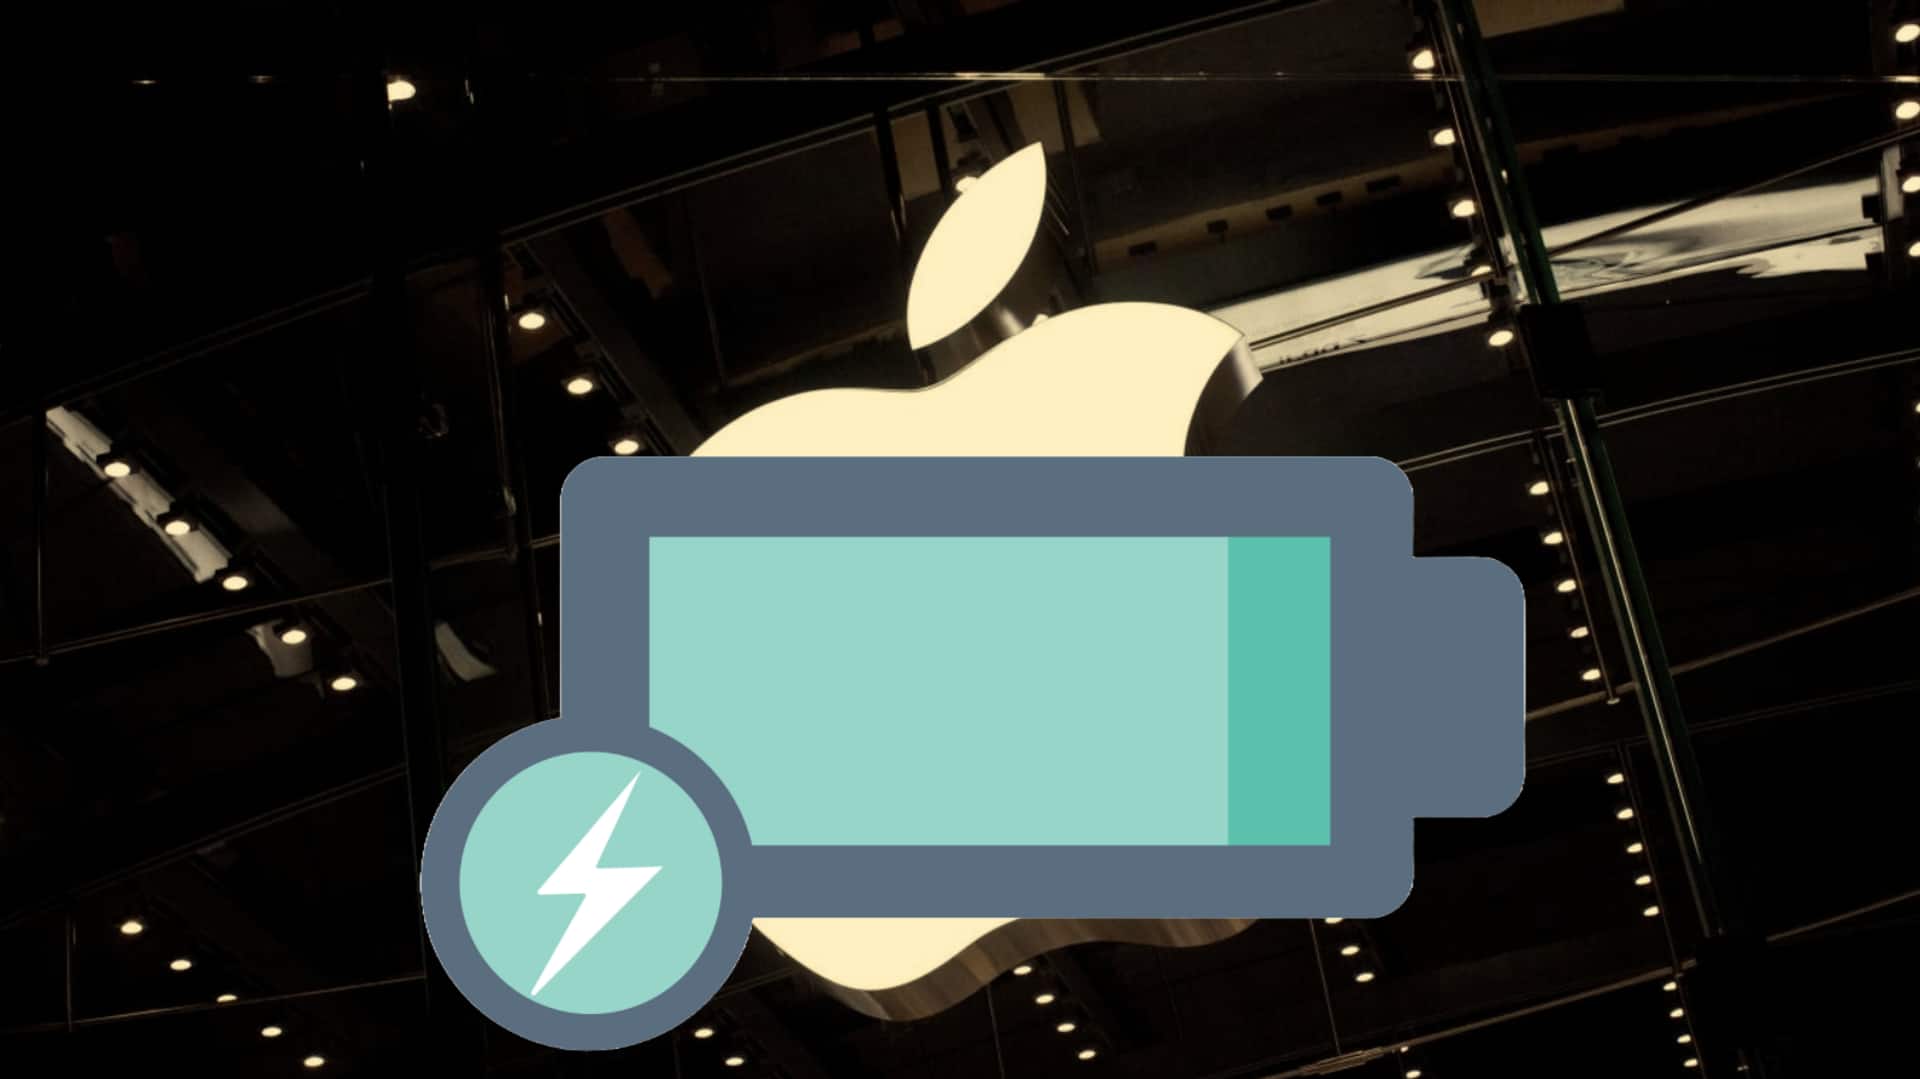 आईफोन की बैटरी लाइफ बढ़ाना चाहते हैं? इन बातों का ध्यान रख करें उपयोग